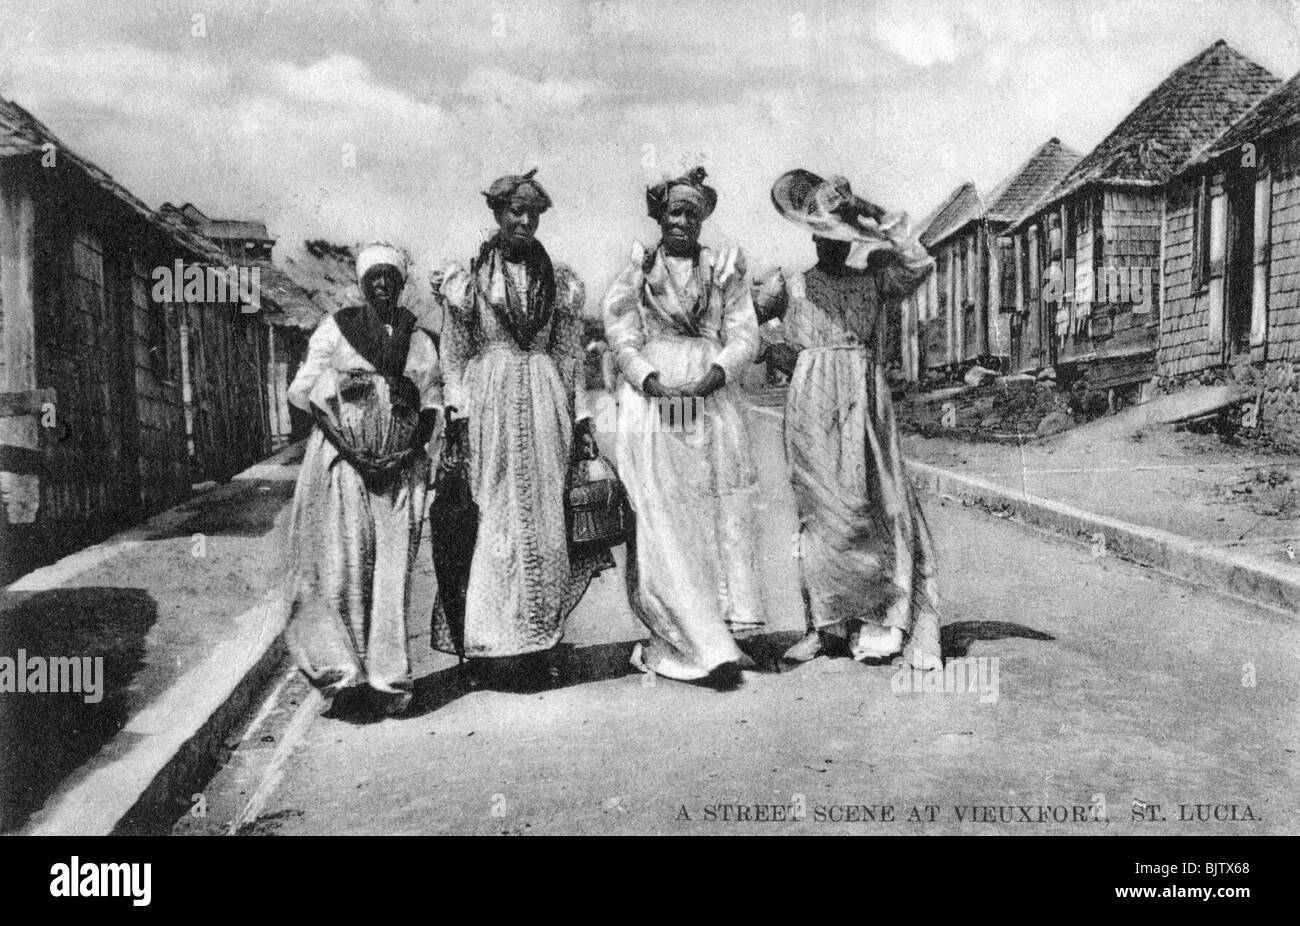 Una scena di strada a Vieuxfort, St Lucia, nei primi anni del XX secolo. Artista: sconosciuto Foto Stock